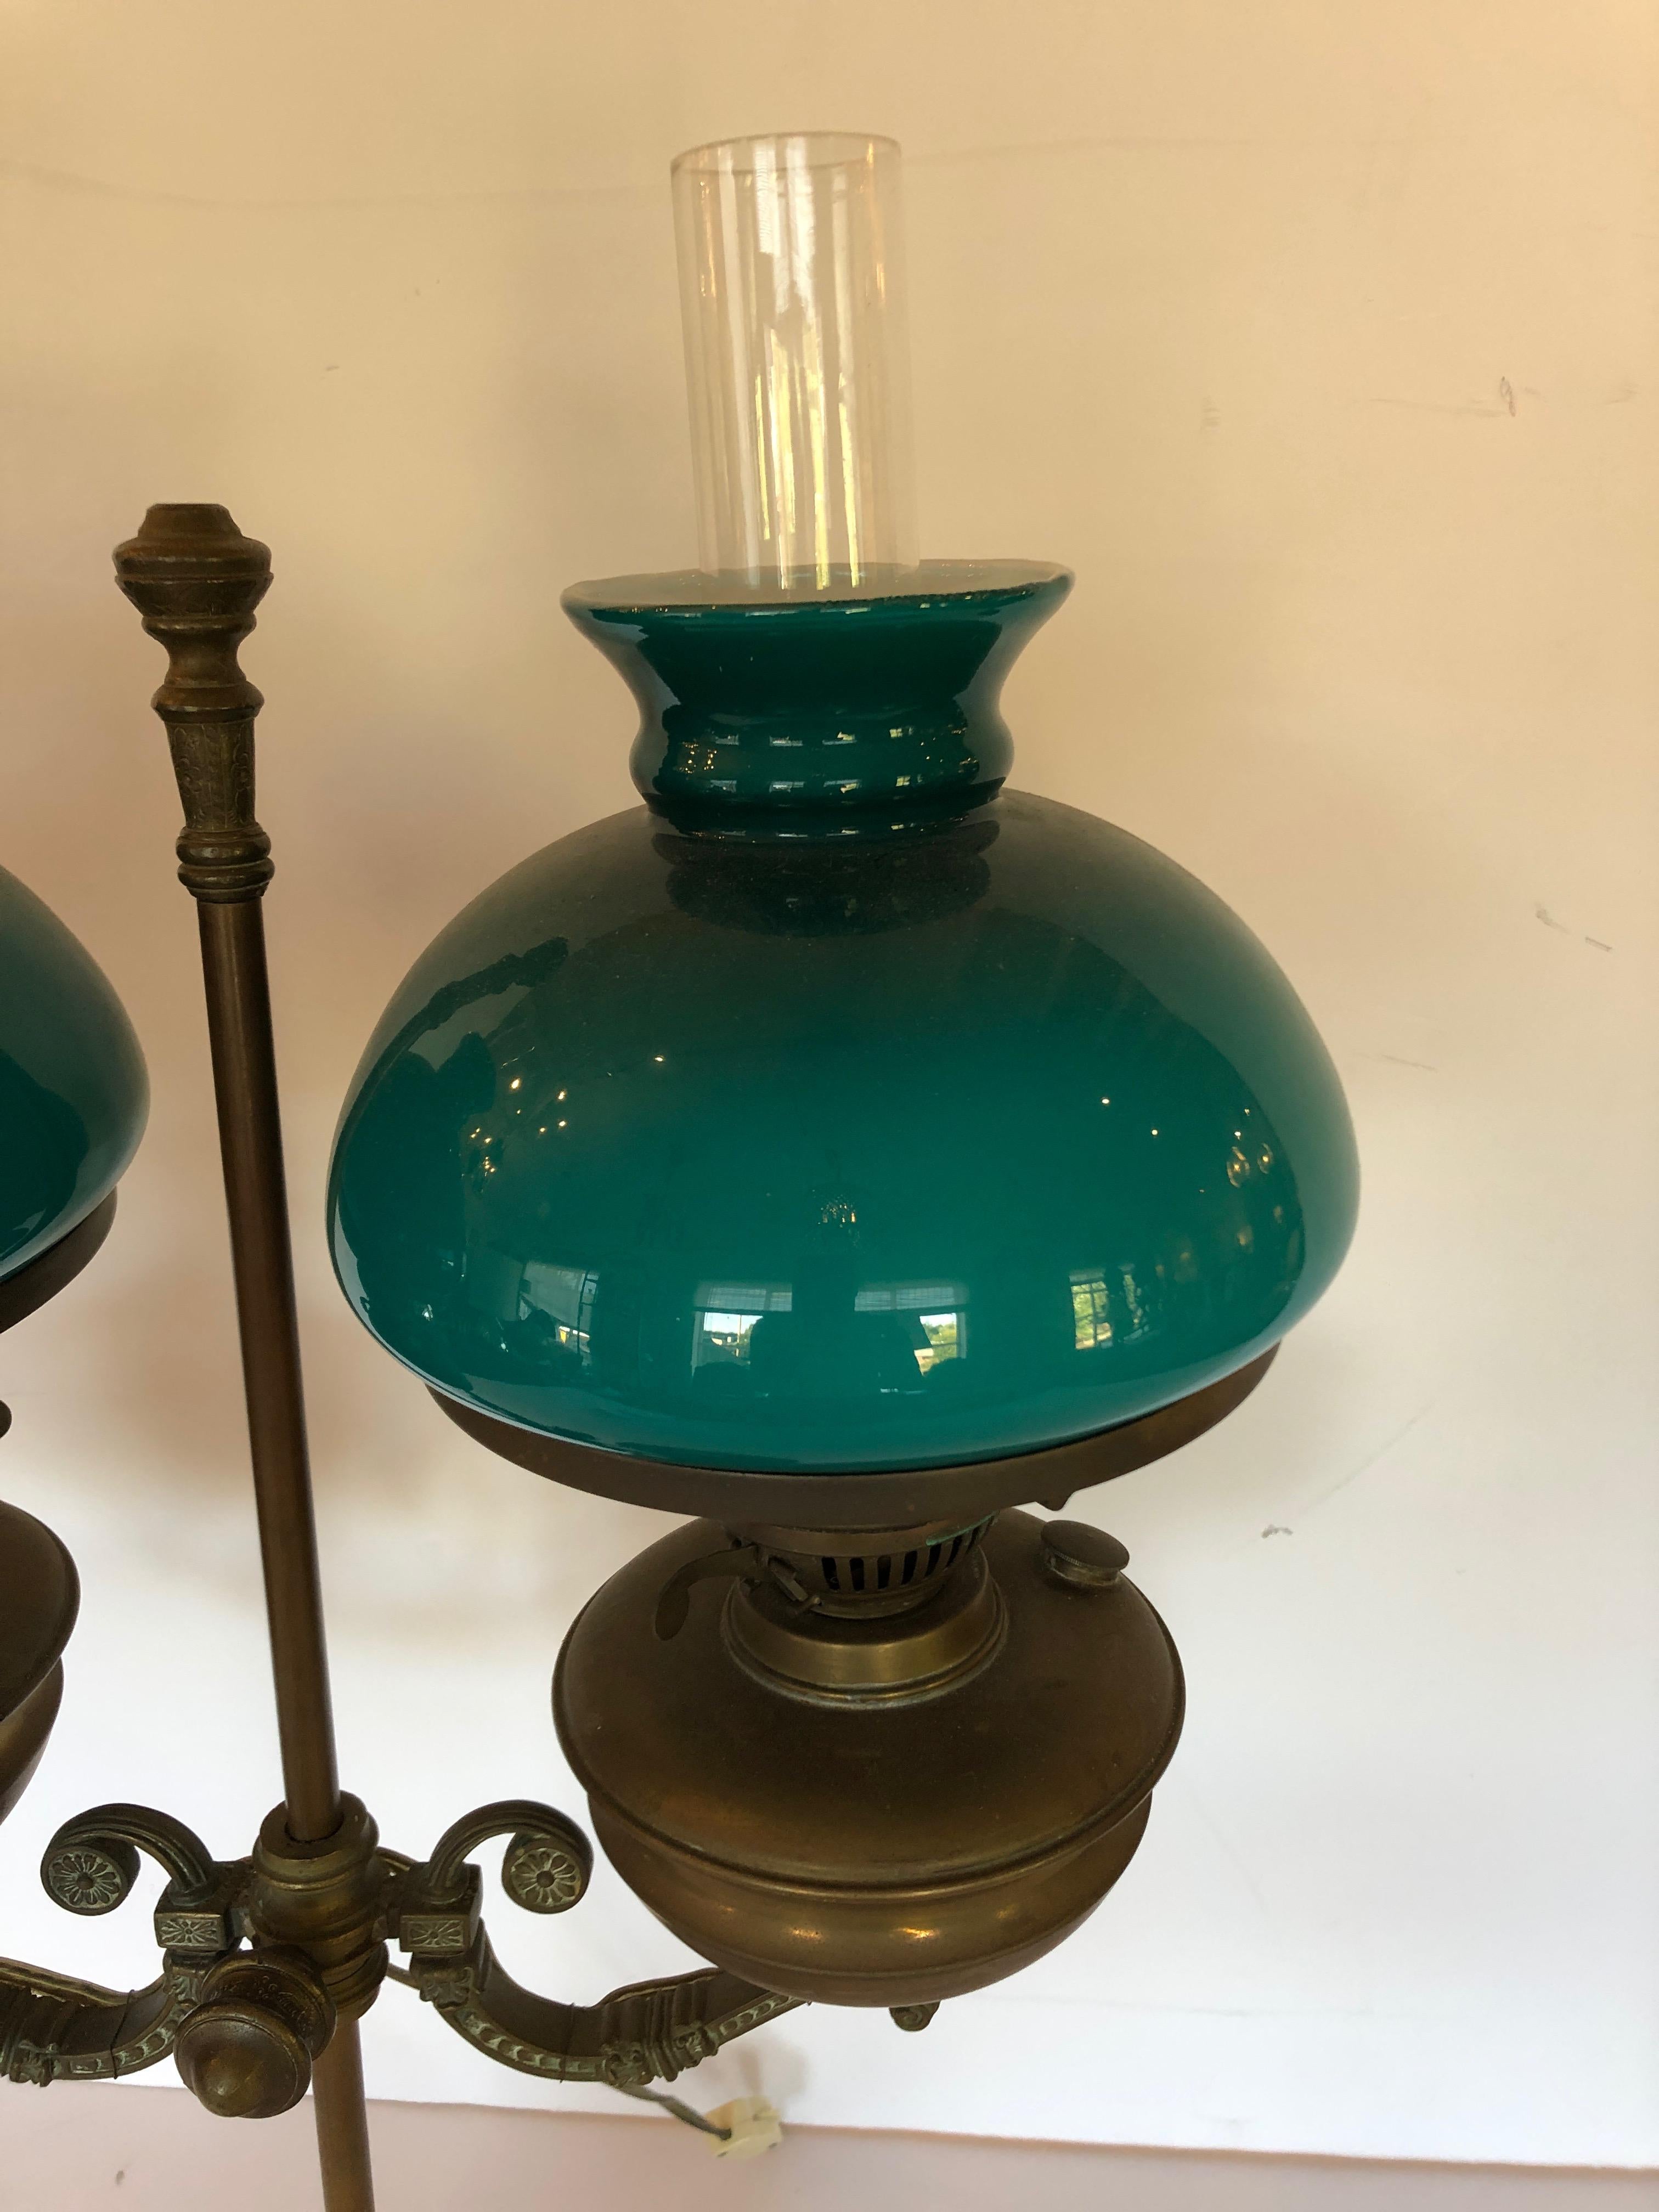 Une merveilleuse lampe de table ou de bureau antique en bronze qui était à l'origine une vieille lampe à huile ayant des abat-jour verts à double enveloppe. Câblé et prêt.